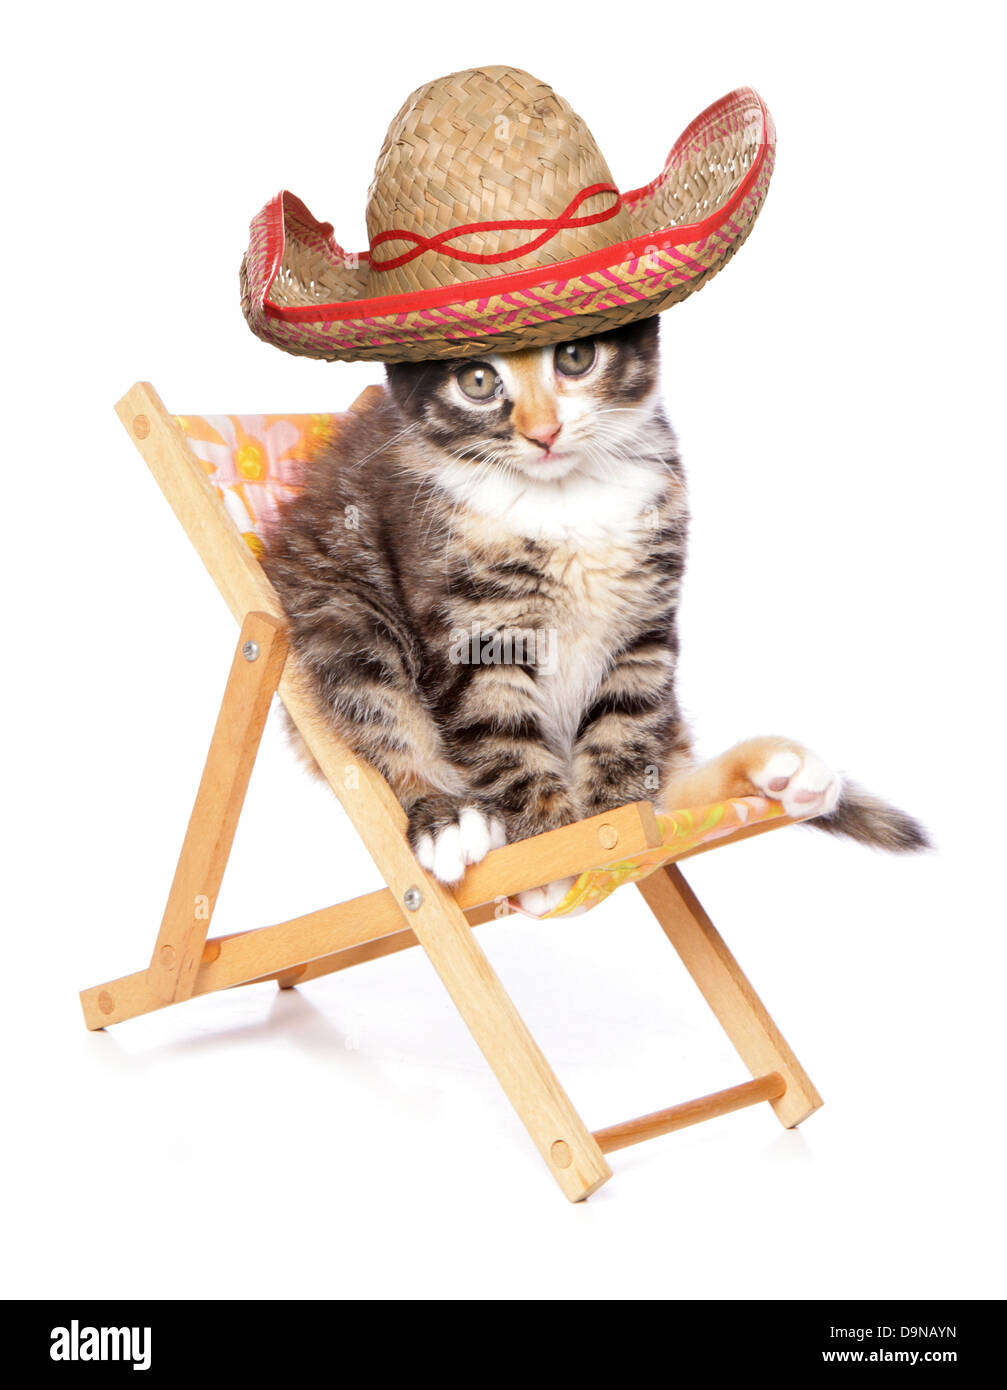 Kätzchen tragen einen Sombrero auf einen Liegestuhl-Studio-Ausschnitt Stockfoto